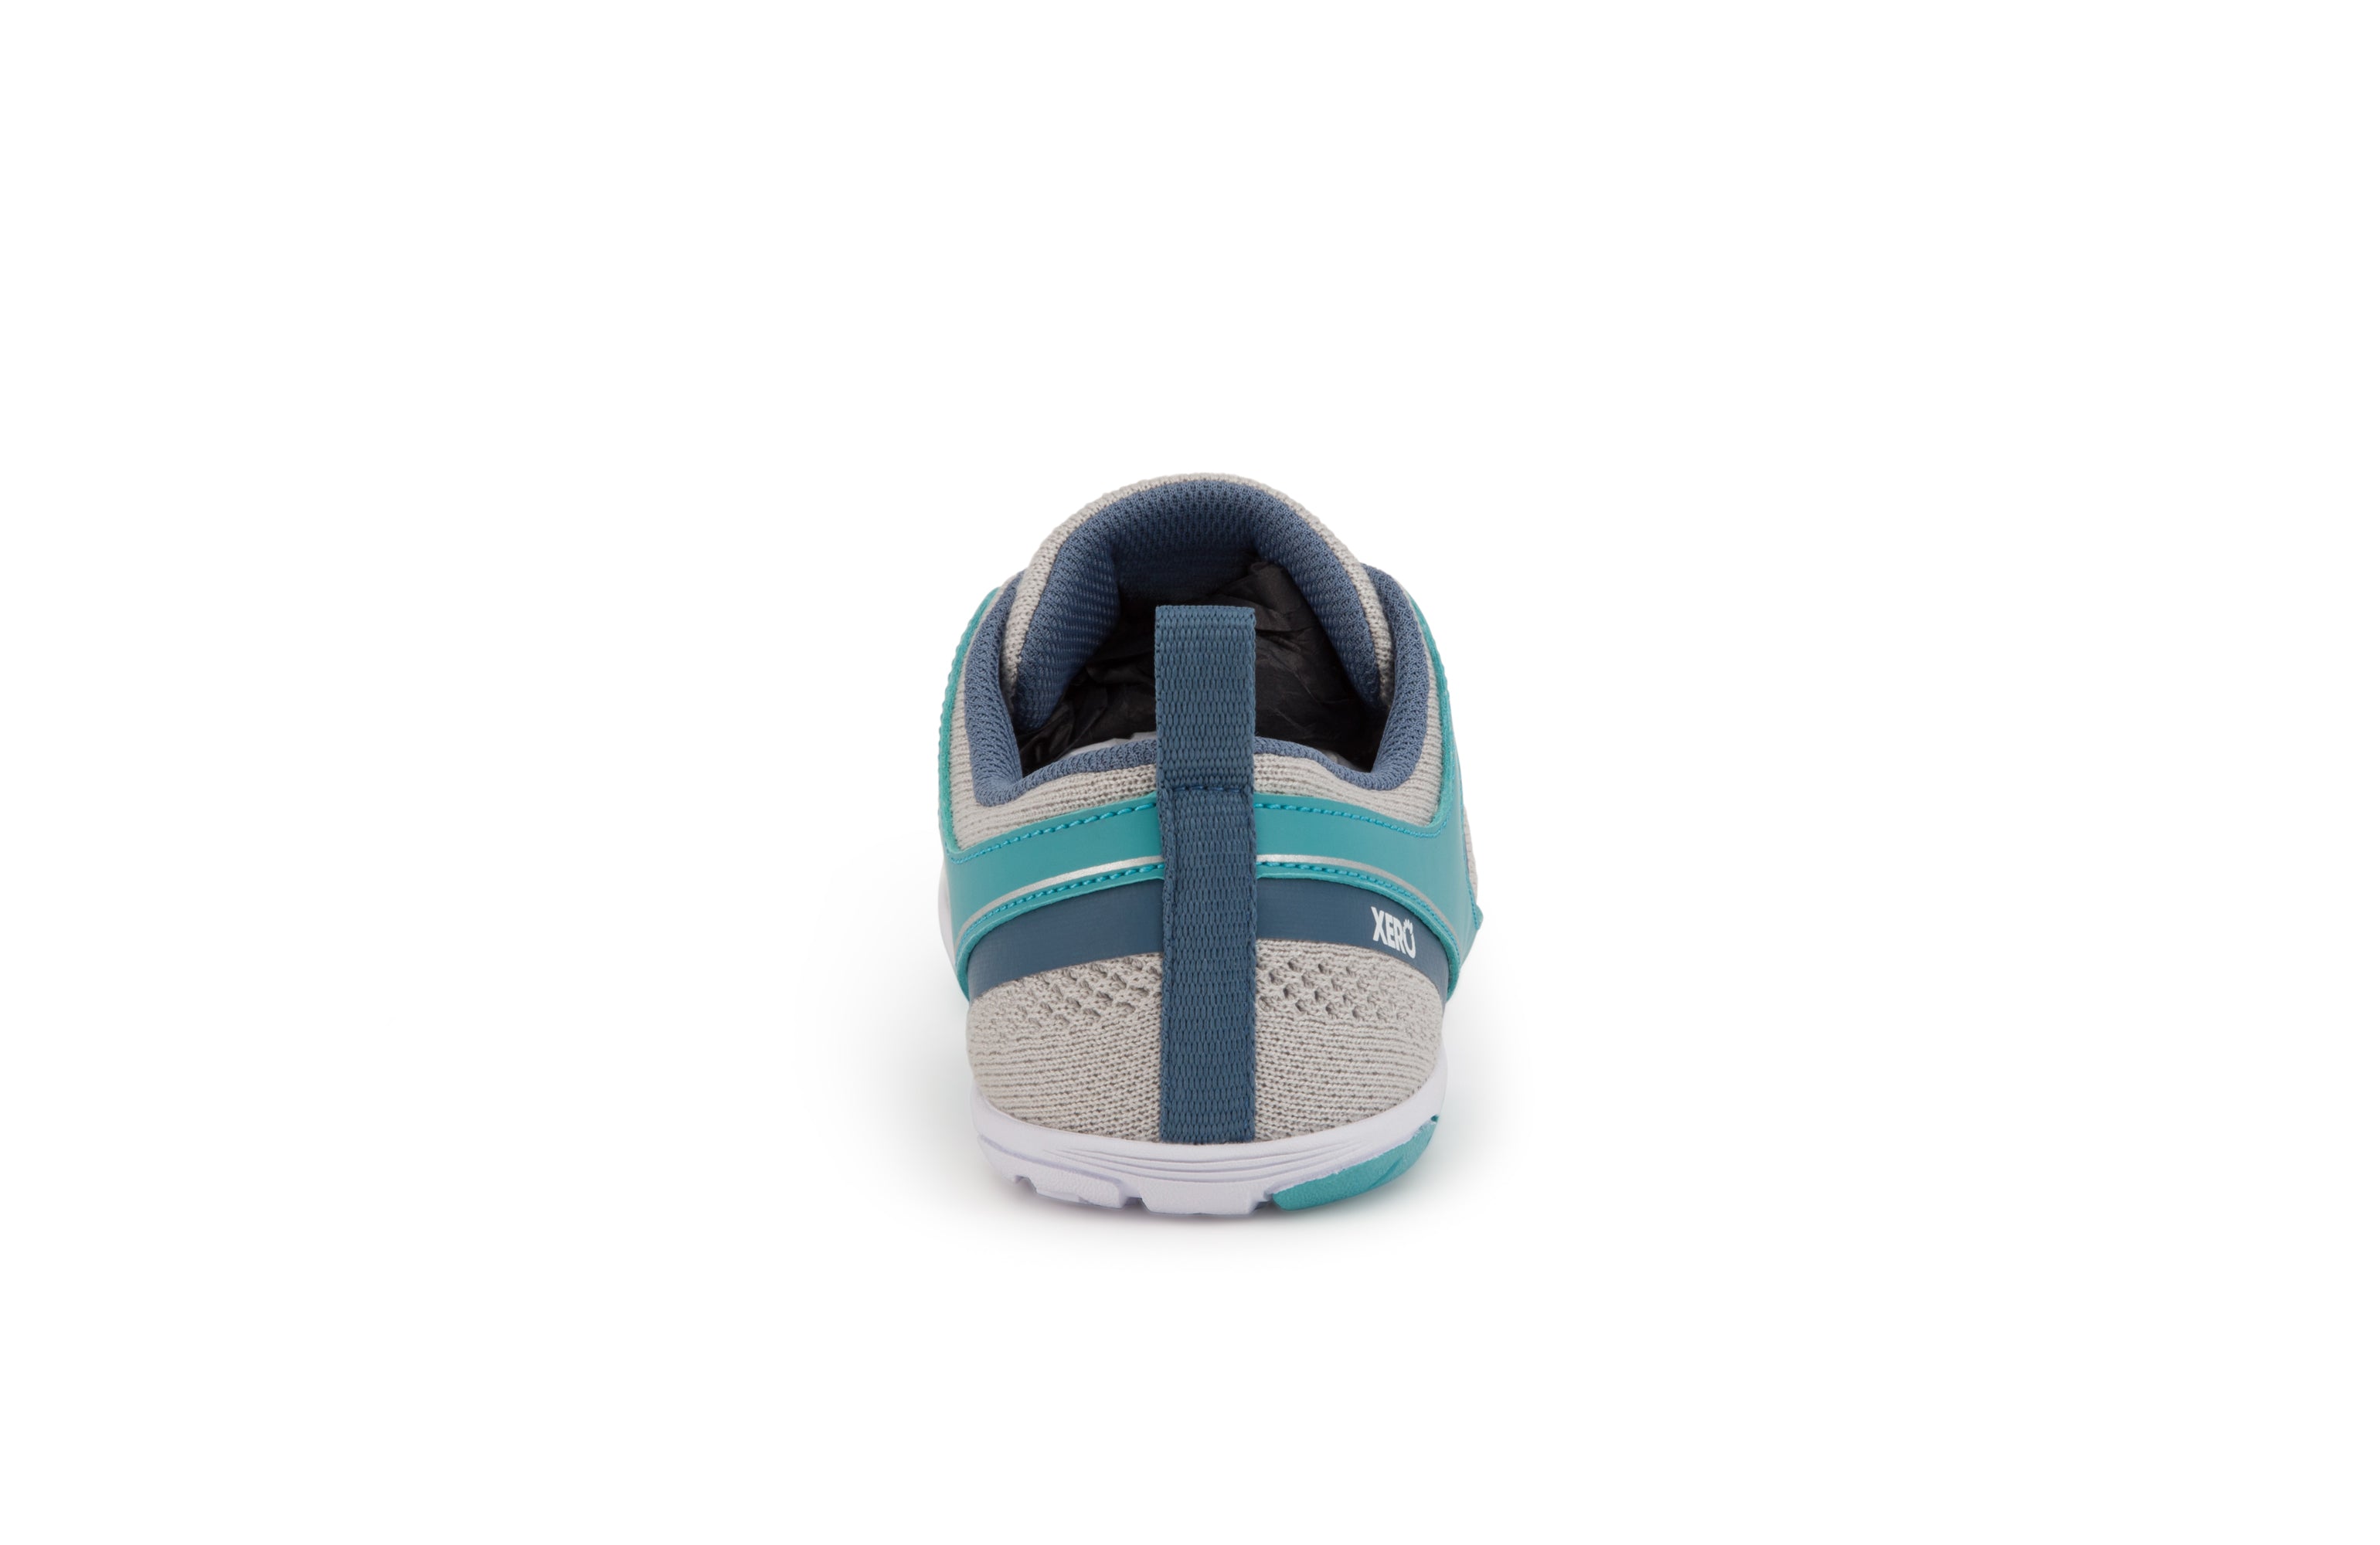 Xero Shoes Zelen Womens barfods træningssko til kvinder i farven cloud / porcelain blue, bagfra